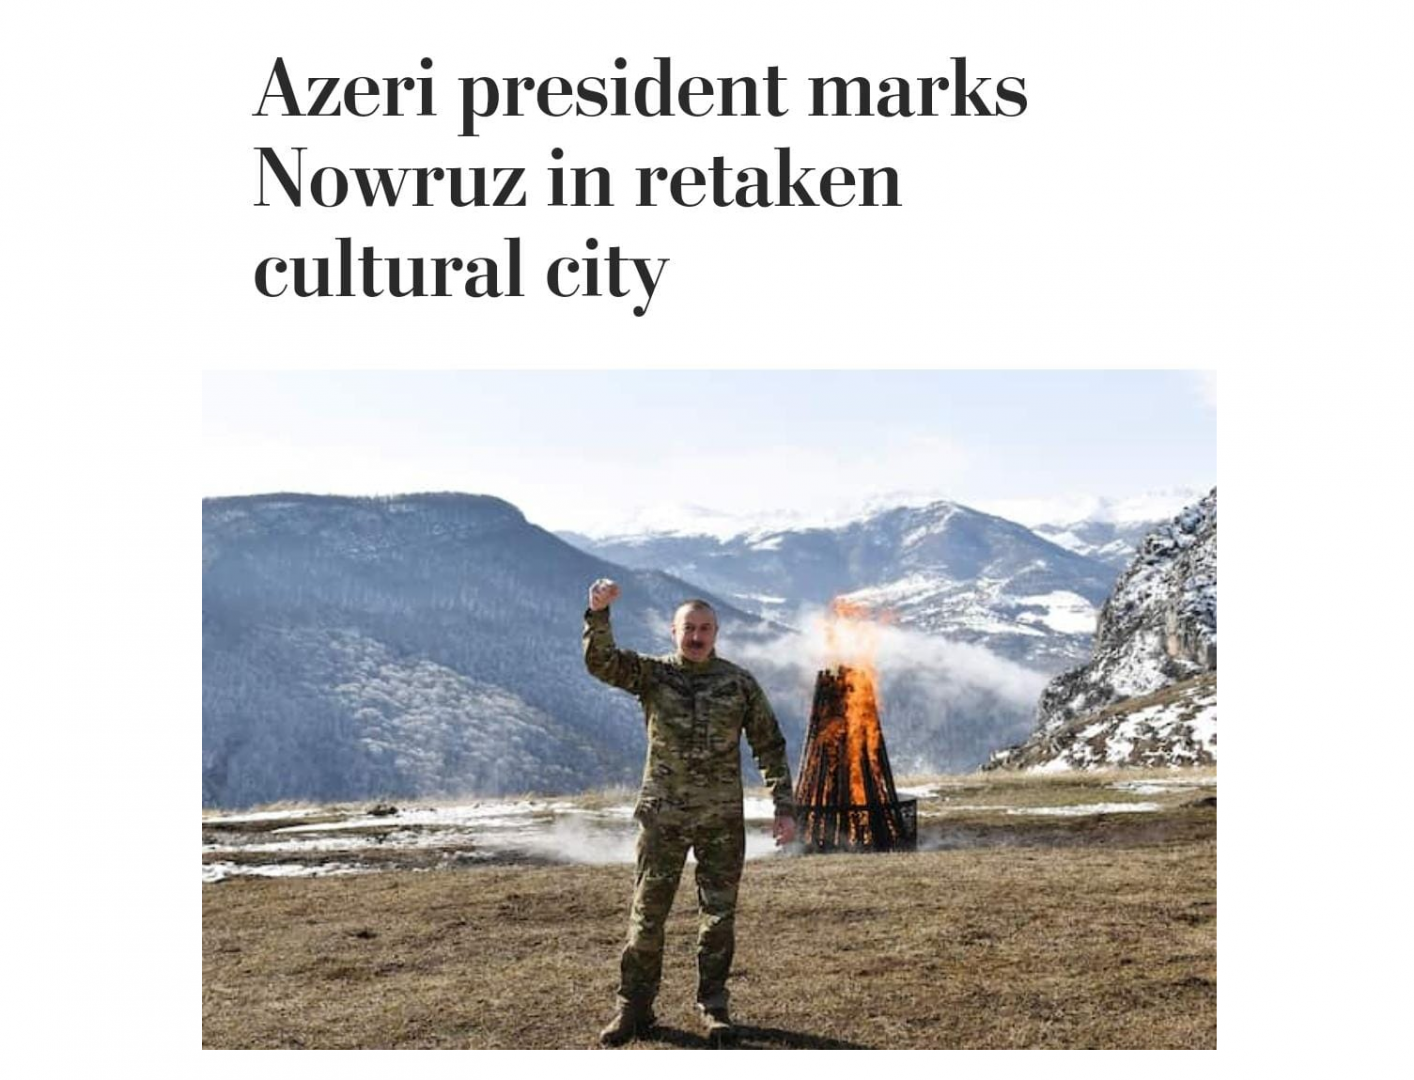 Празднование Новруз в освобожденной Шуше в центре внимания The Washington Post